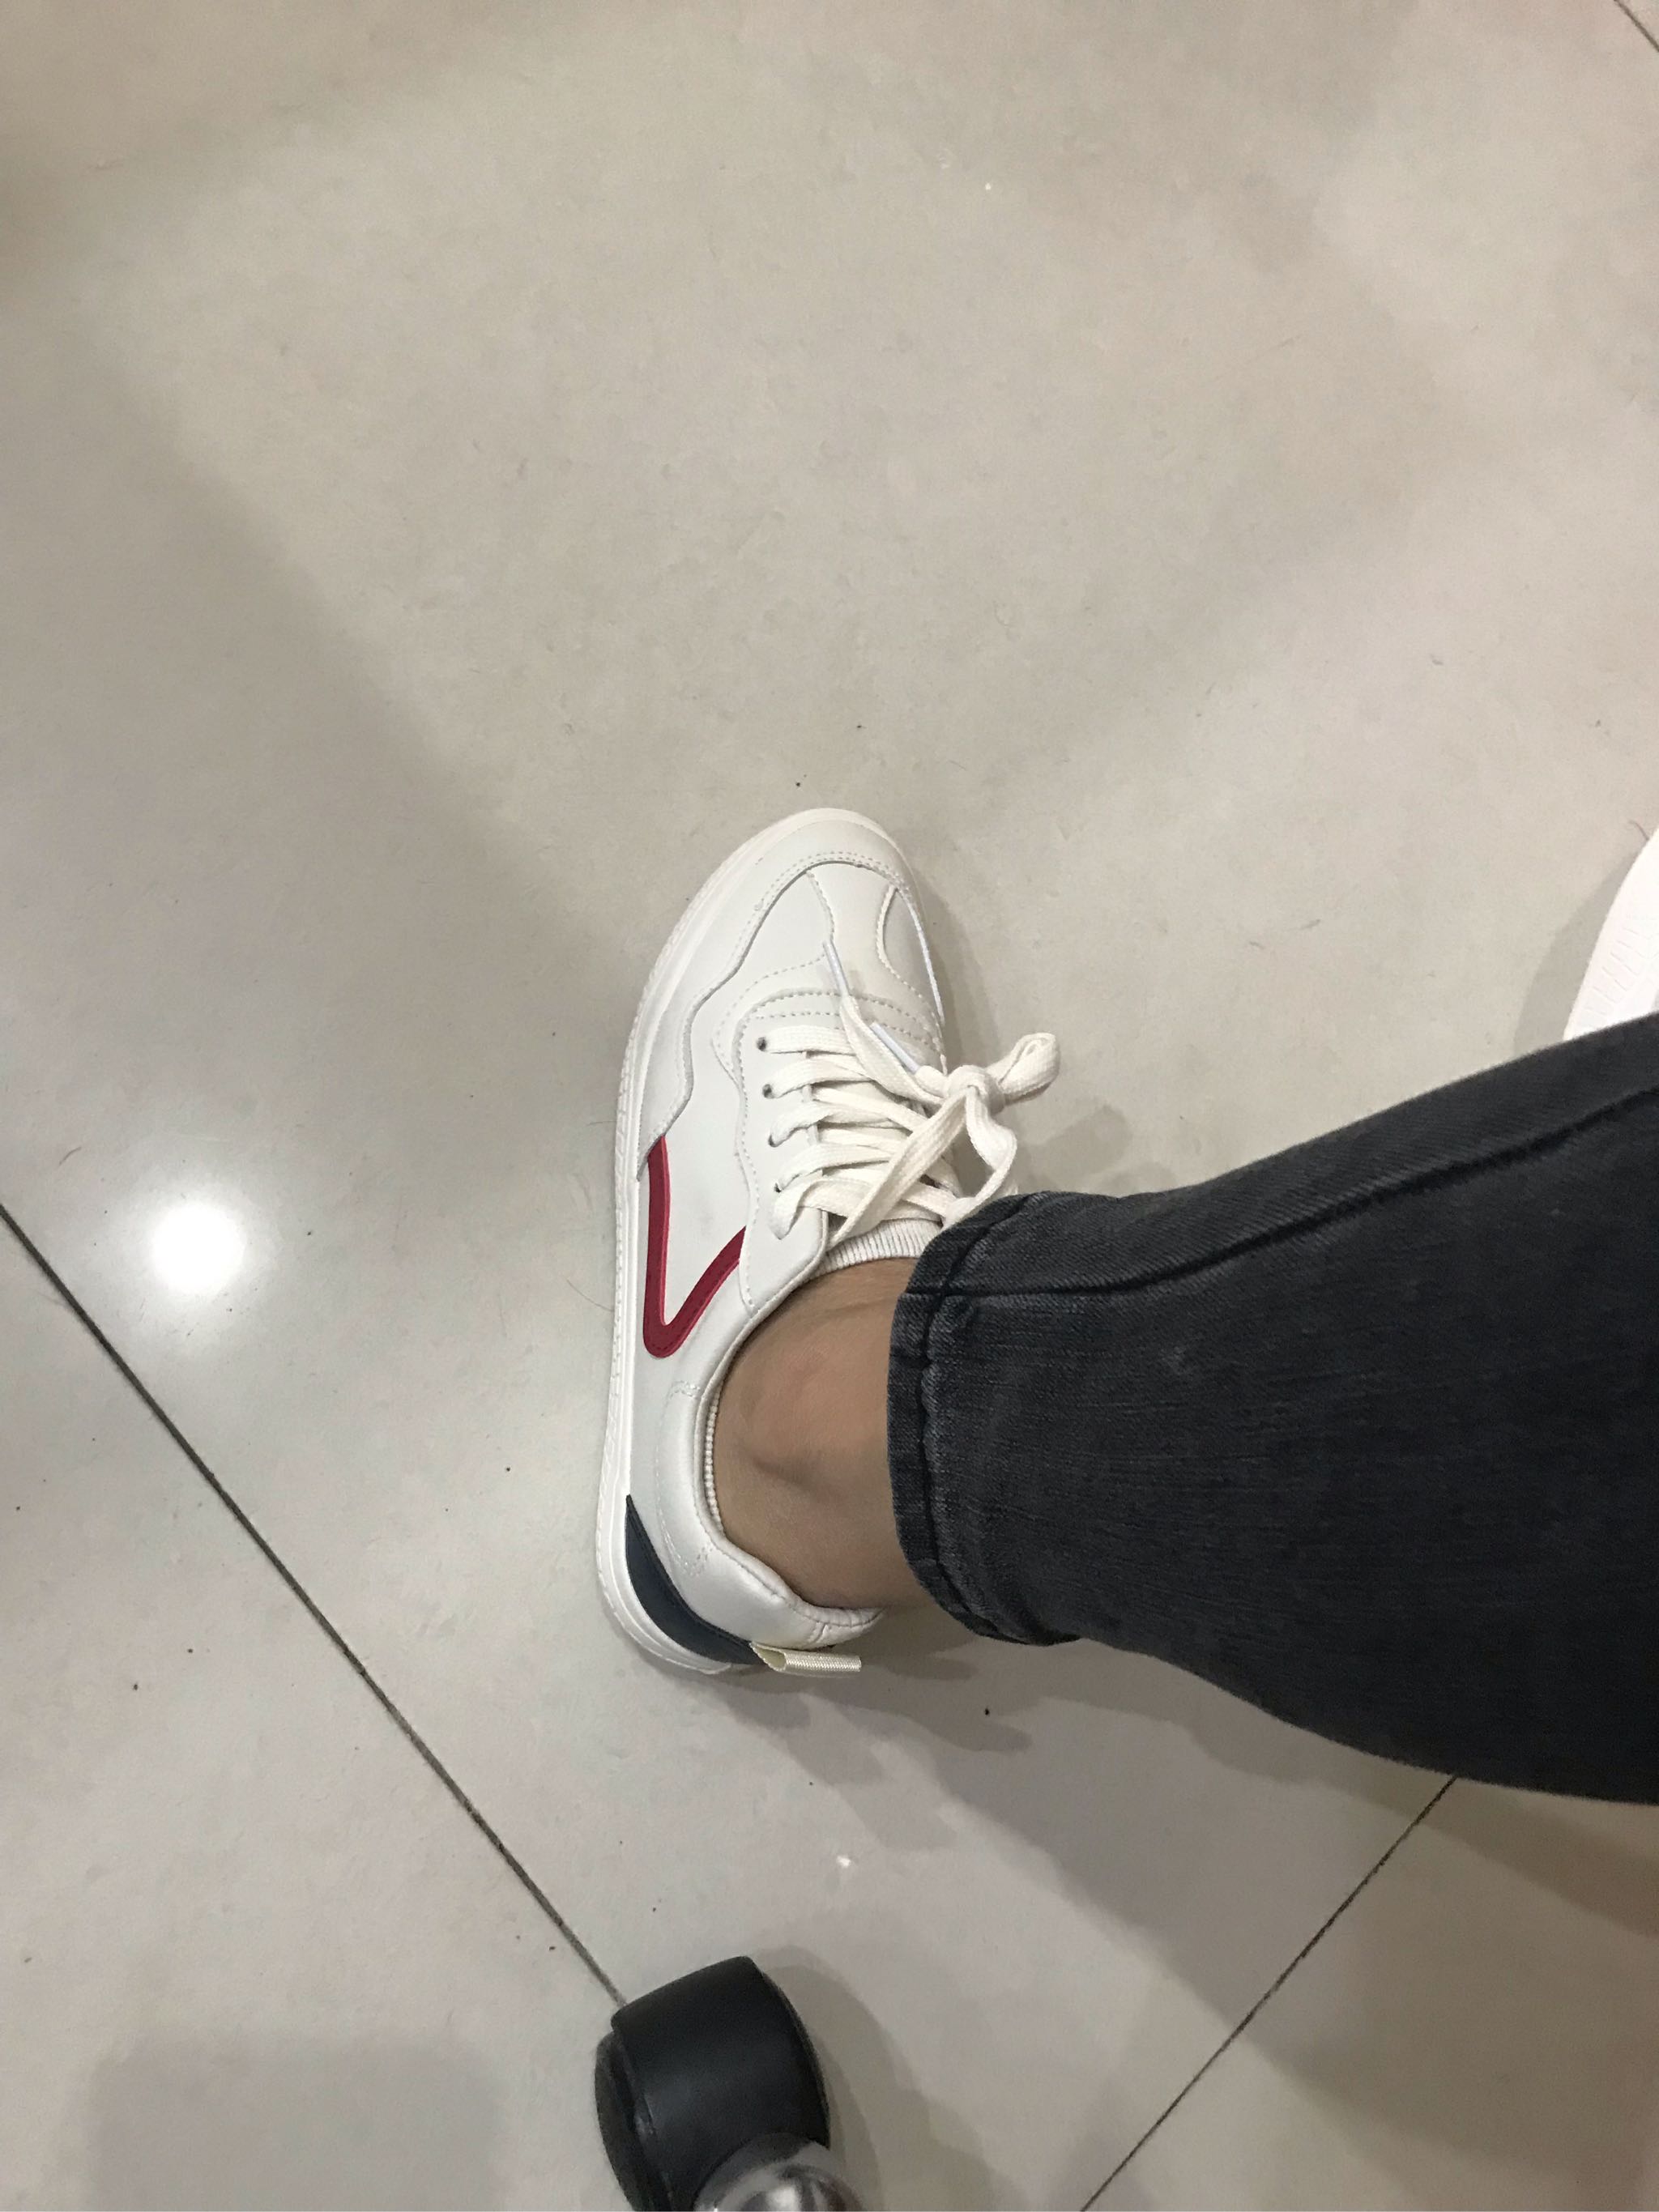 名将新款皮面小白鞋女韩版硫化鞋女士休闲鞋子瑞安厂家批发0372-阿里巴巴